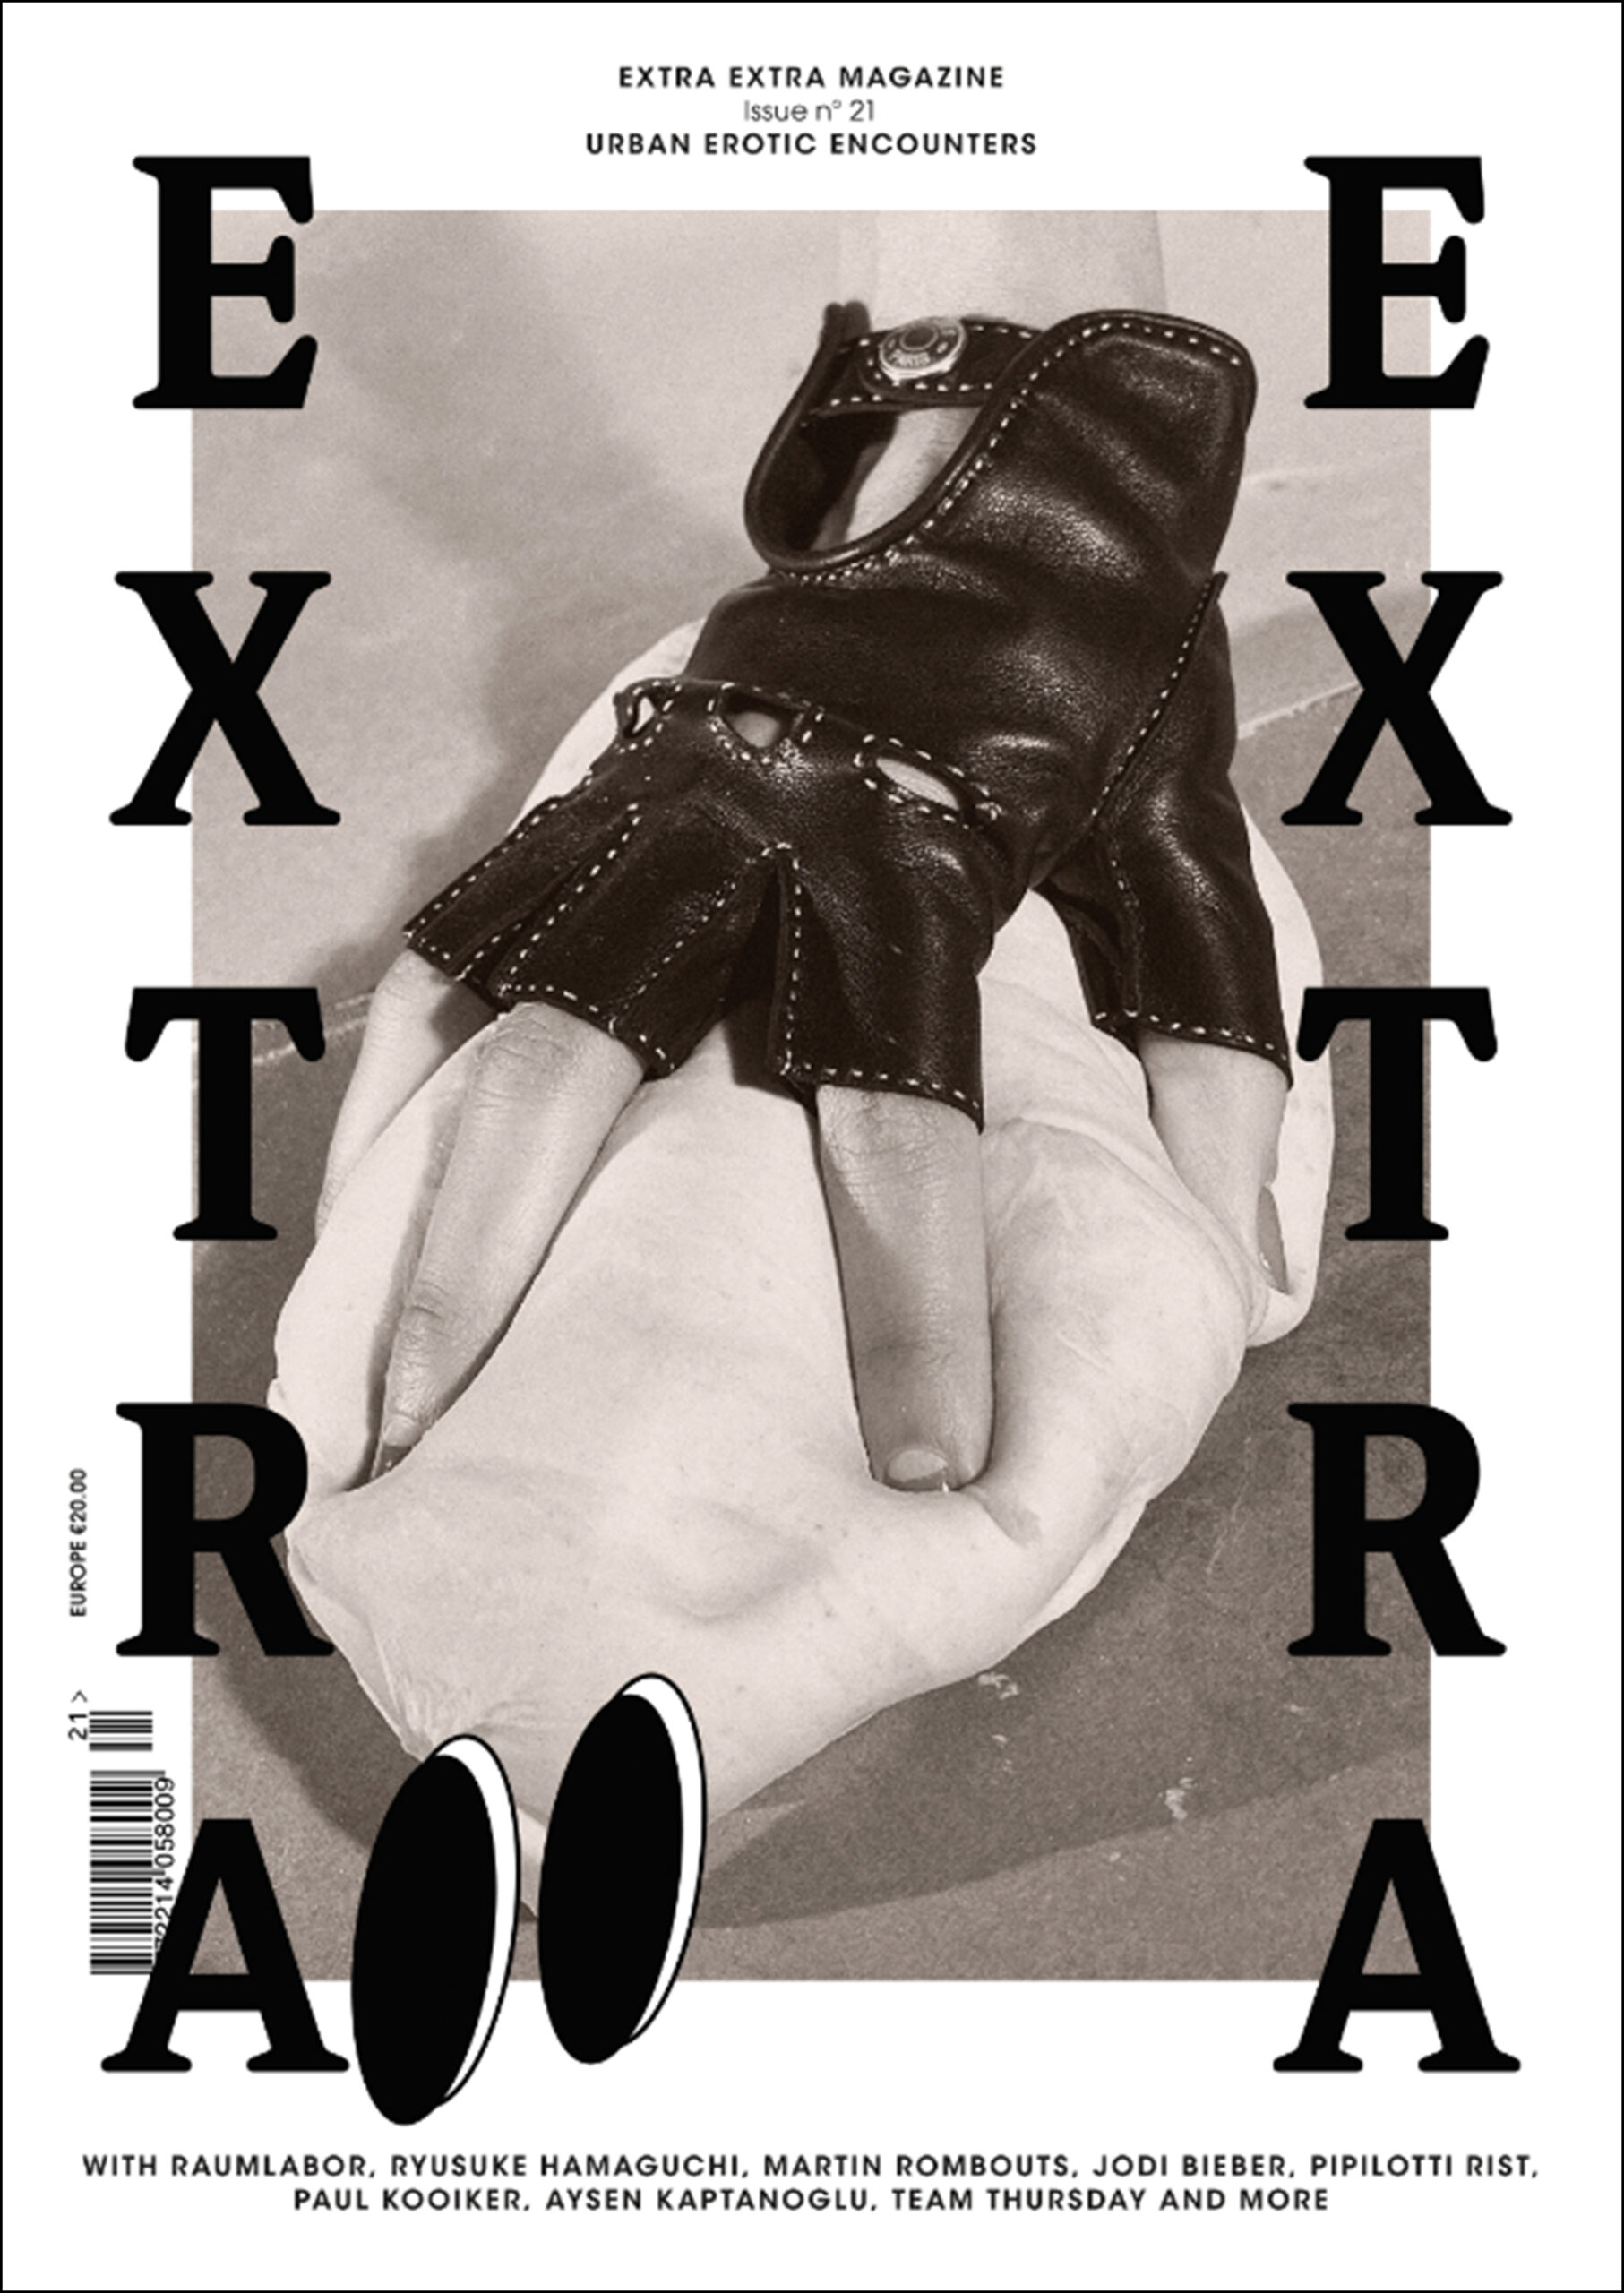 Magazines Archive - Extra Extra Magazine